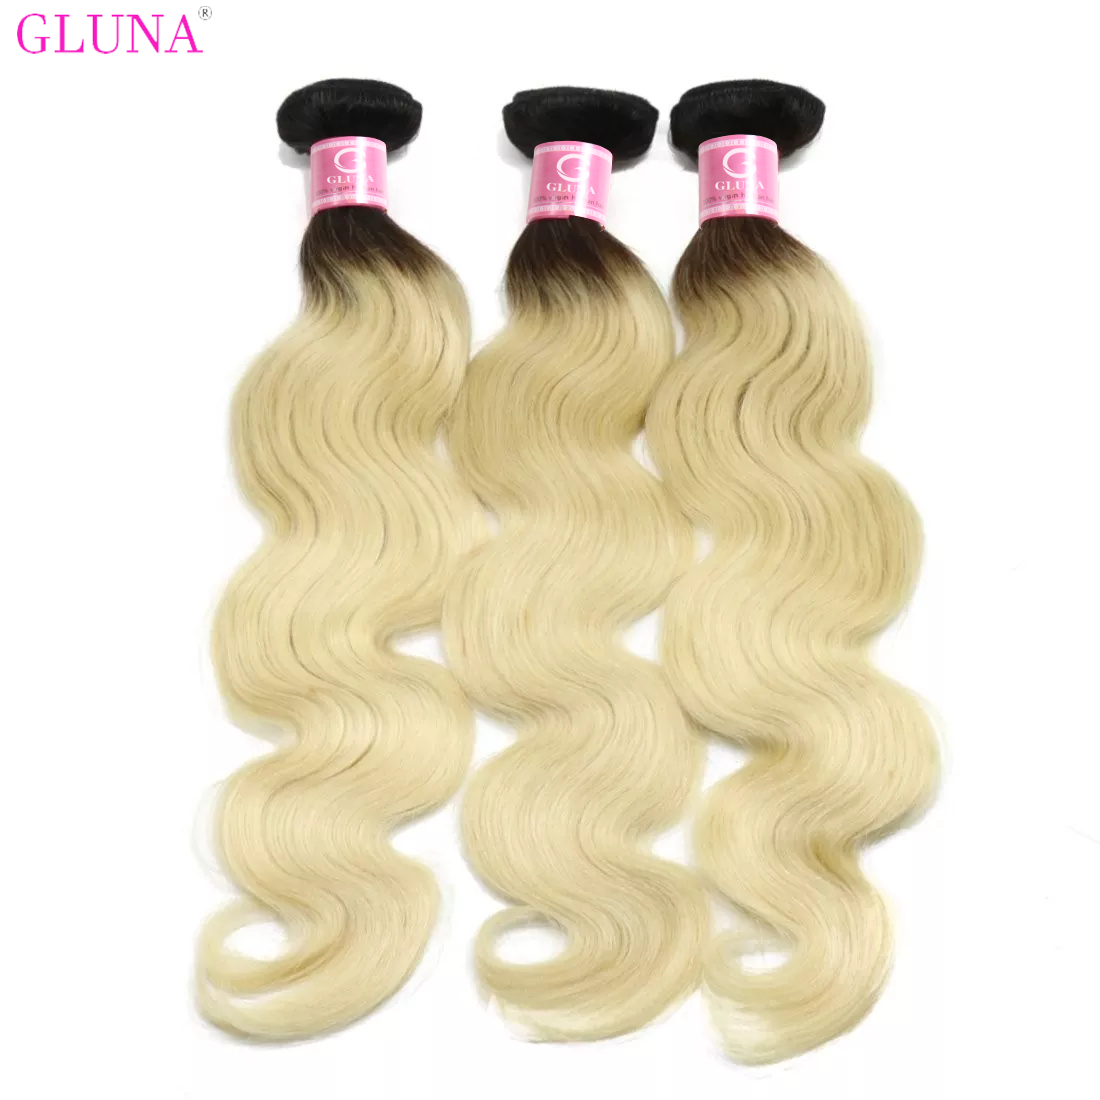 Gluna Hair 8A Grade Russian 1B/613 Blonde Body Wave Hair Bundles Russian virgin Hair (1B/613 Color)